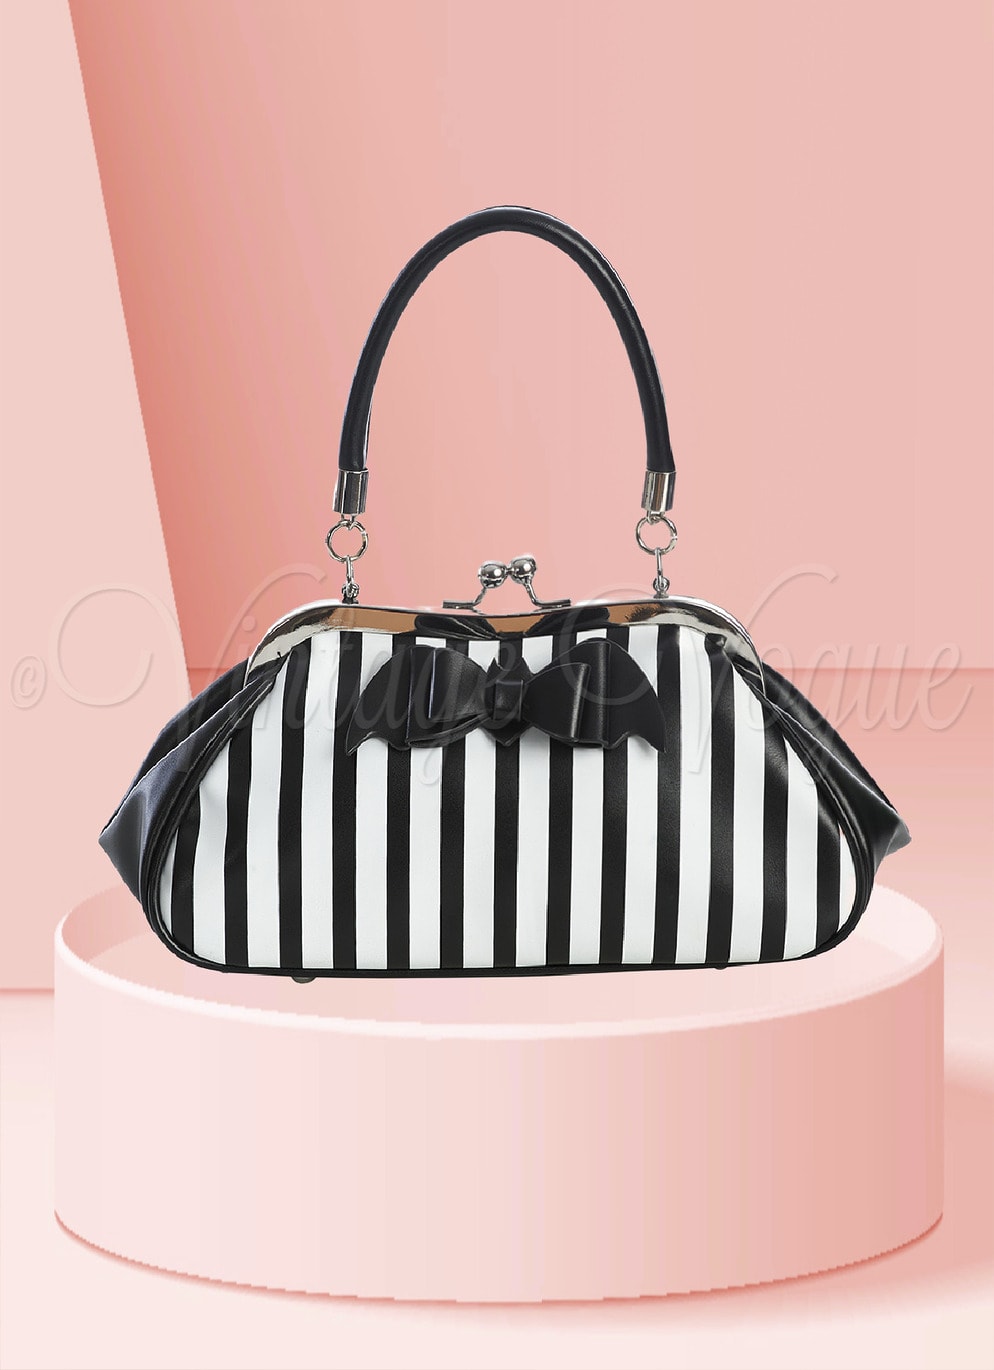 Banned Gothic Streifen Handtasche Mystery Handbag in Schwarz Weiß